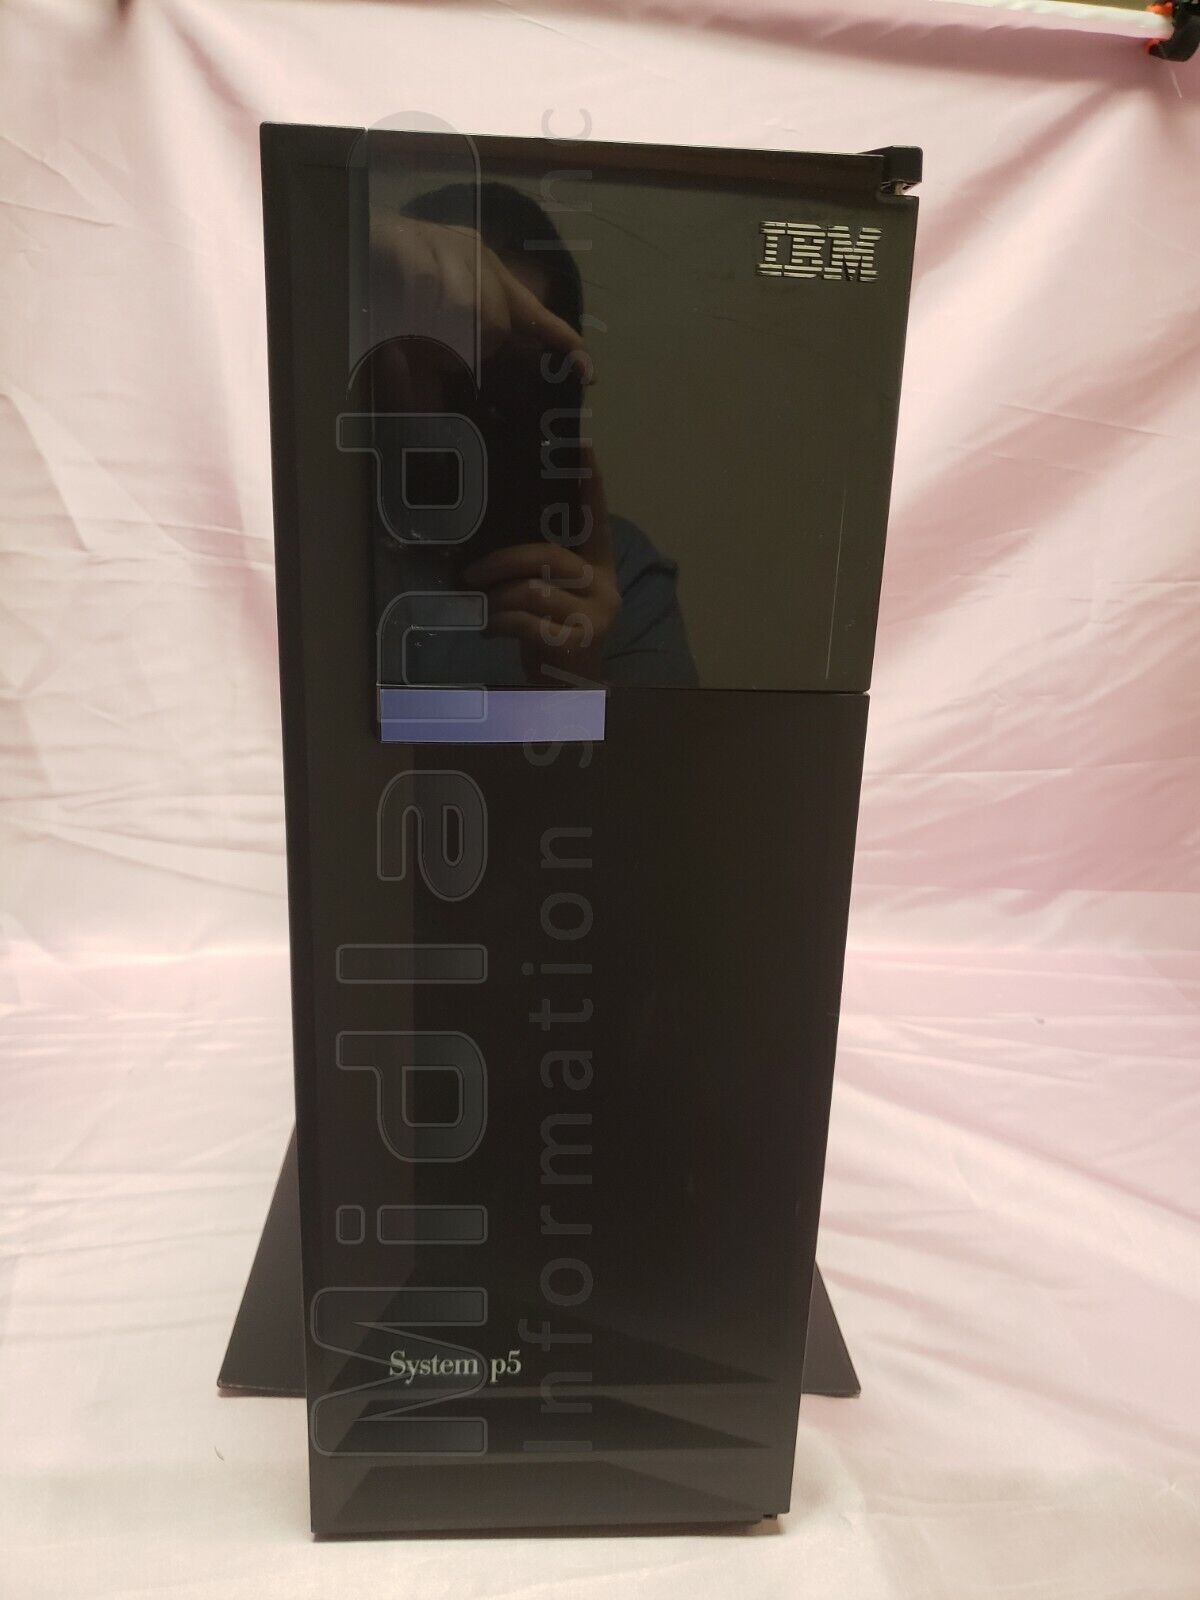 IBM 9407-515 iSeries i5, 1.9GHz 1-way (4901), V5R4, 5 user license, deskside